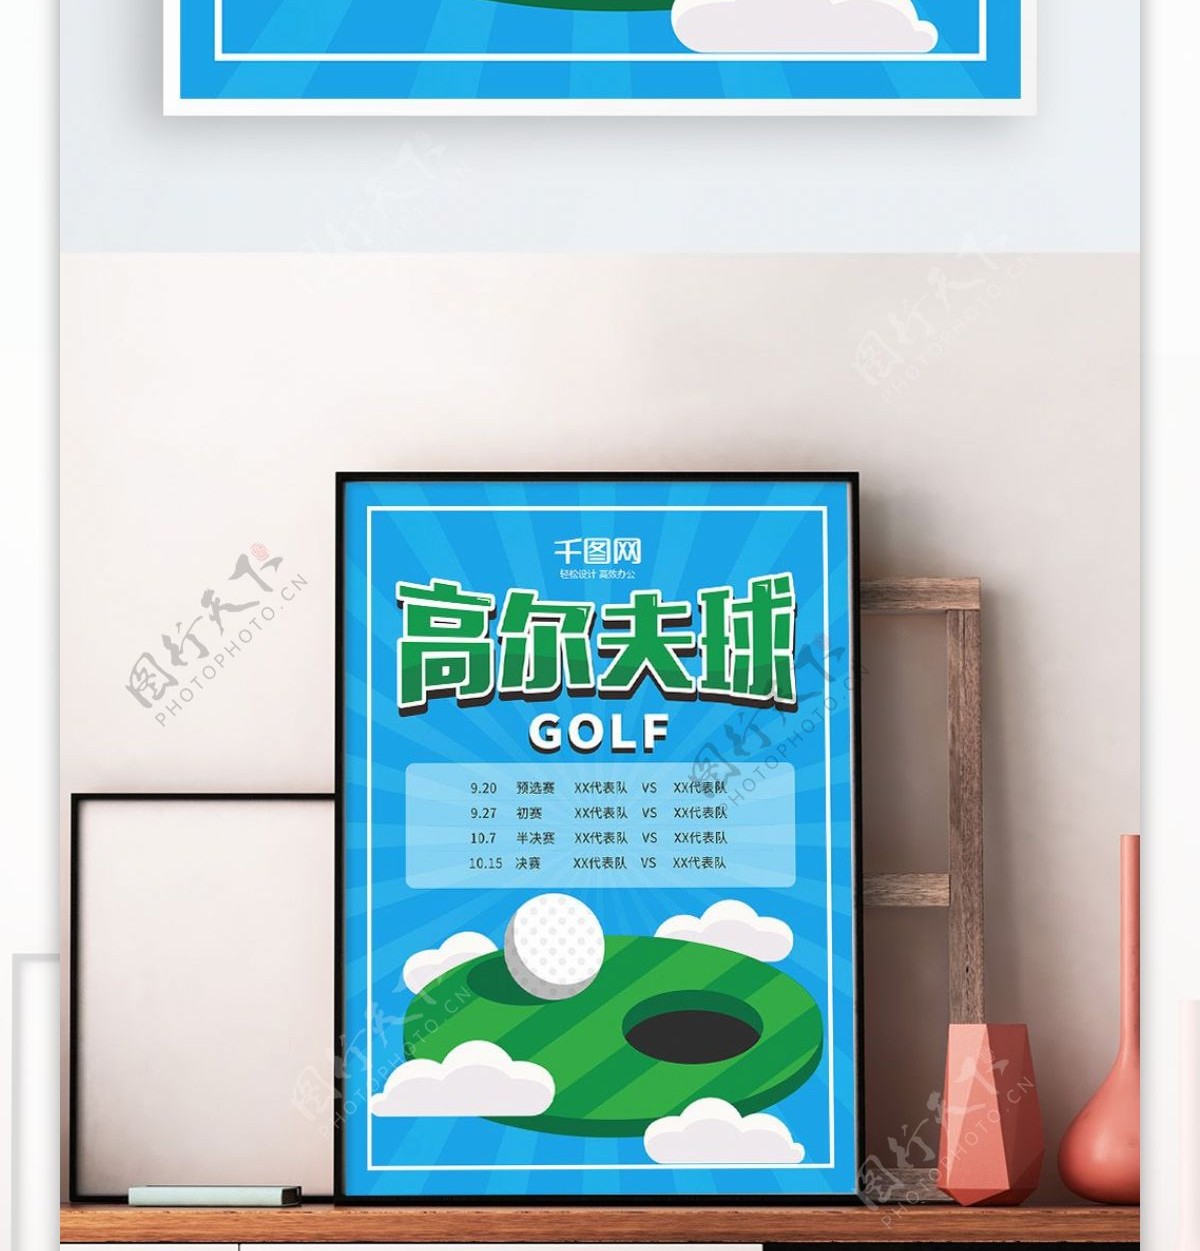 蓝色简约高尔夫球运动比赛时间表宣传海报